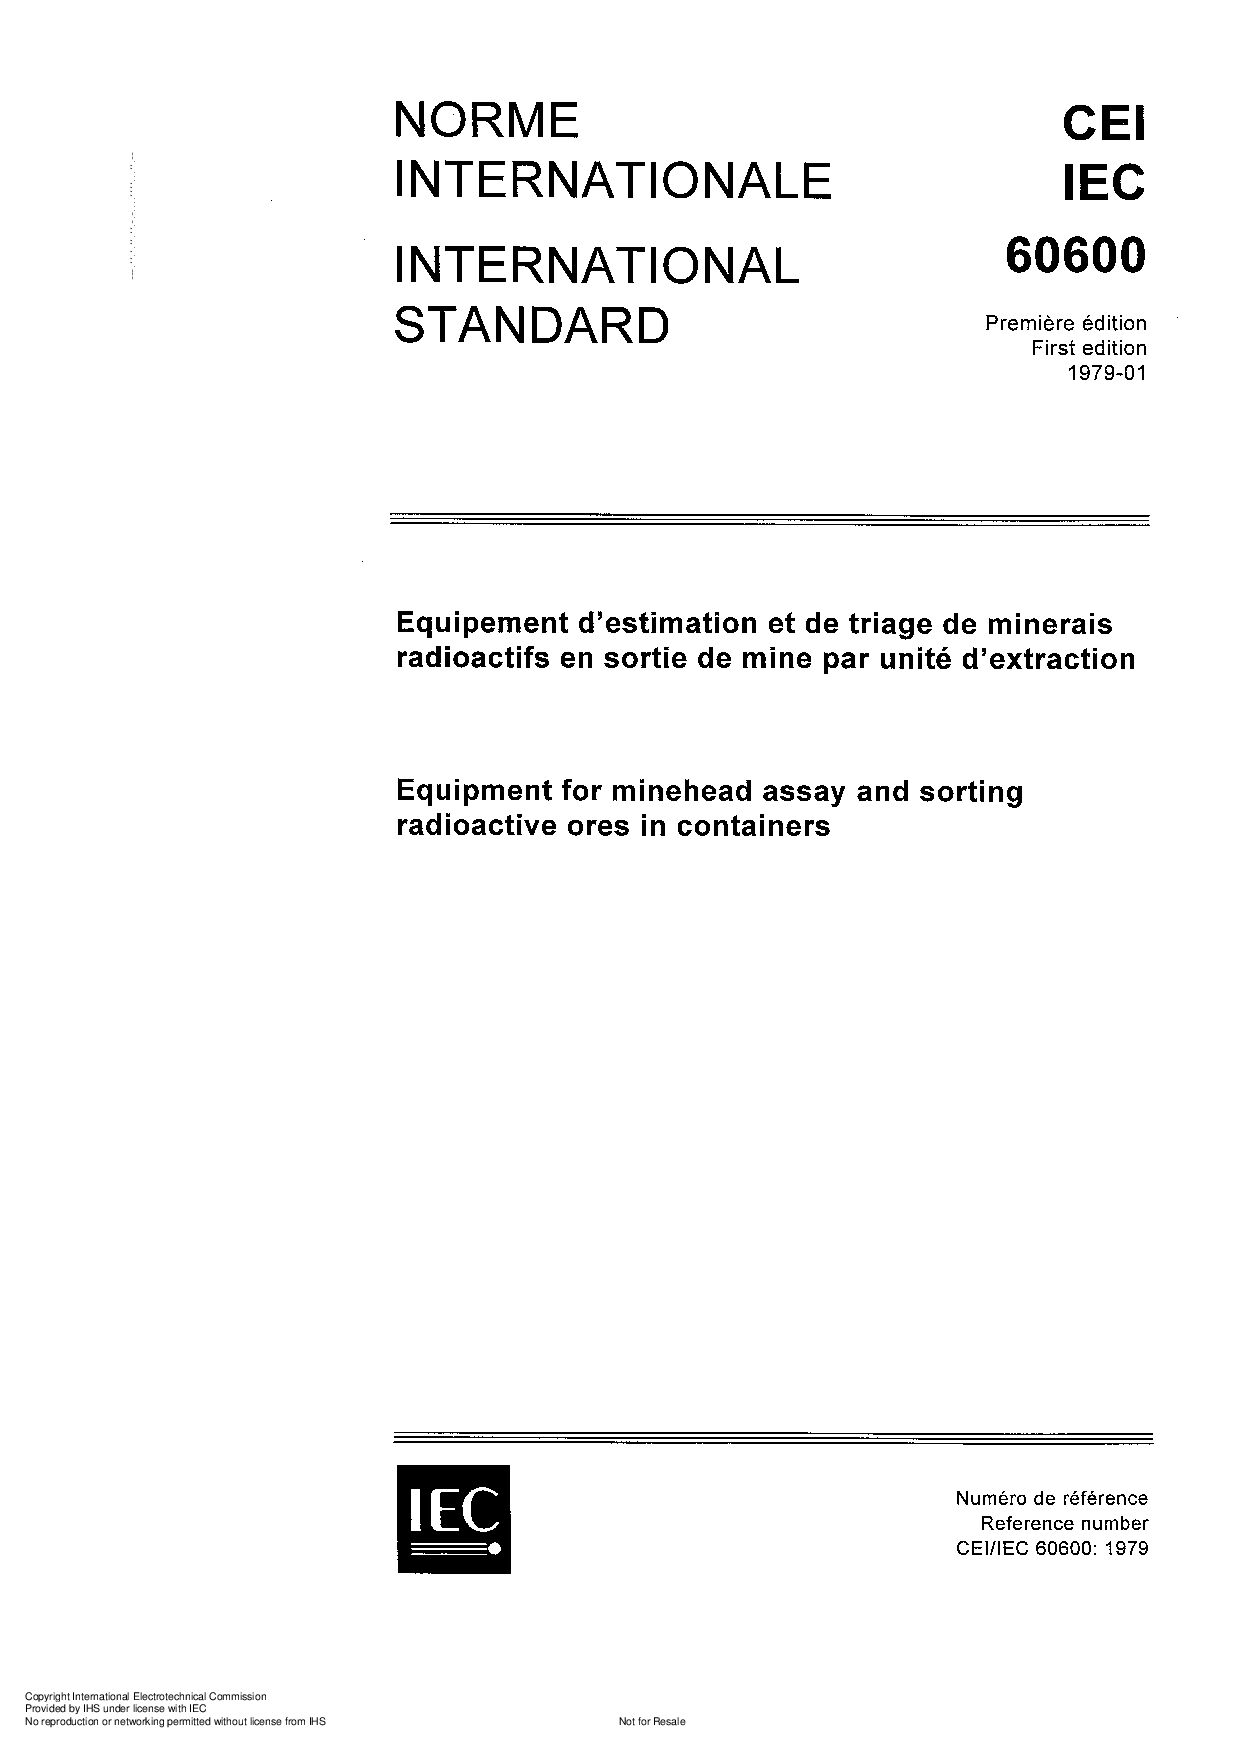 IEC 60600-1979